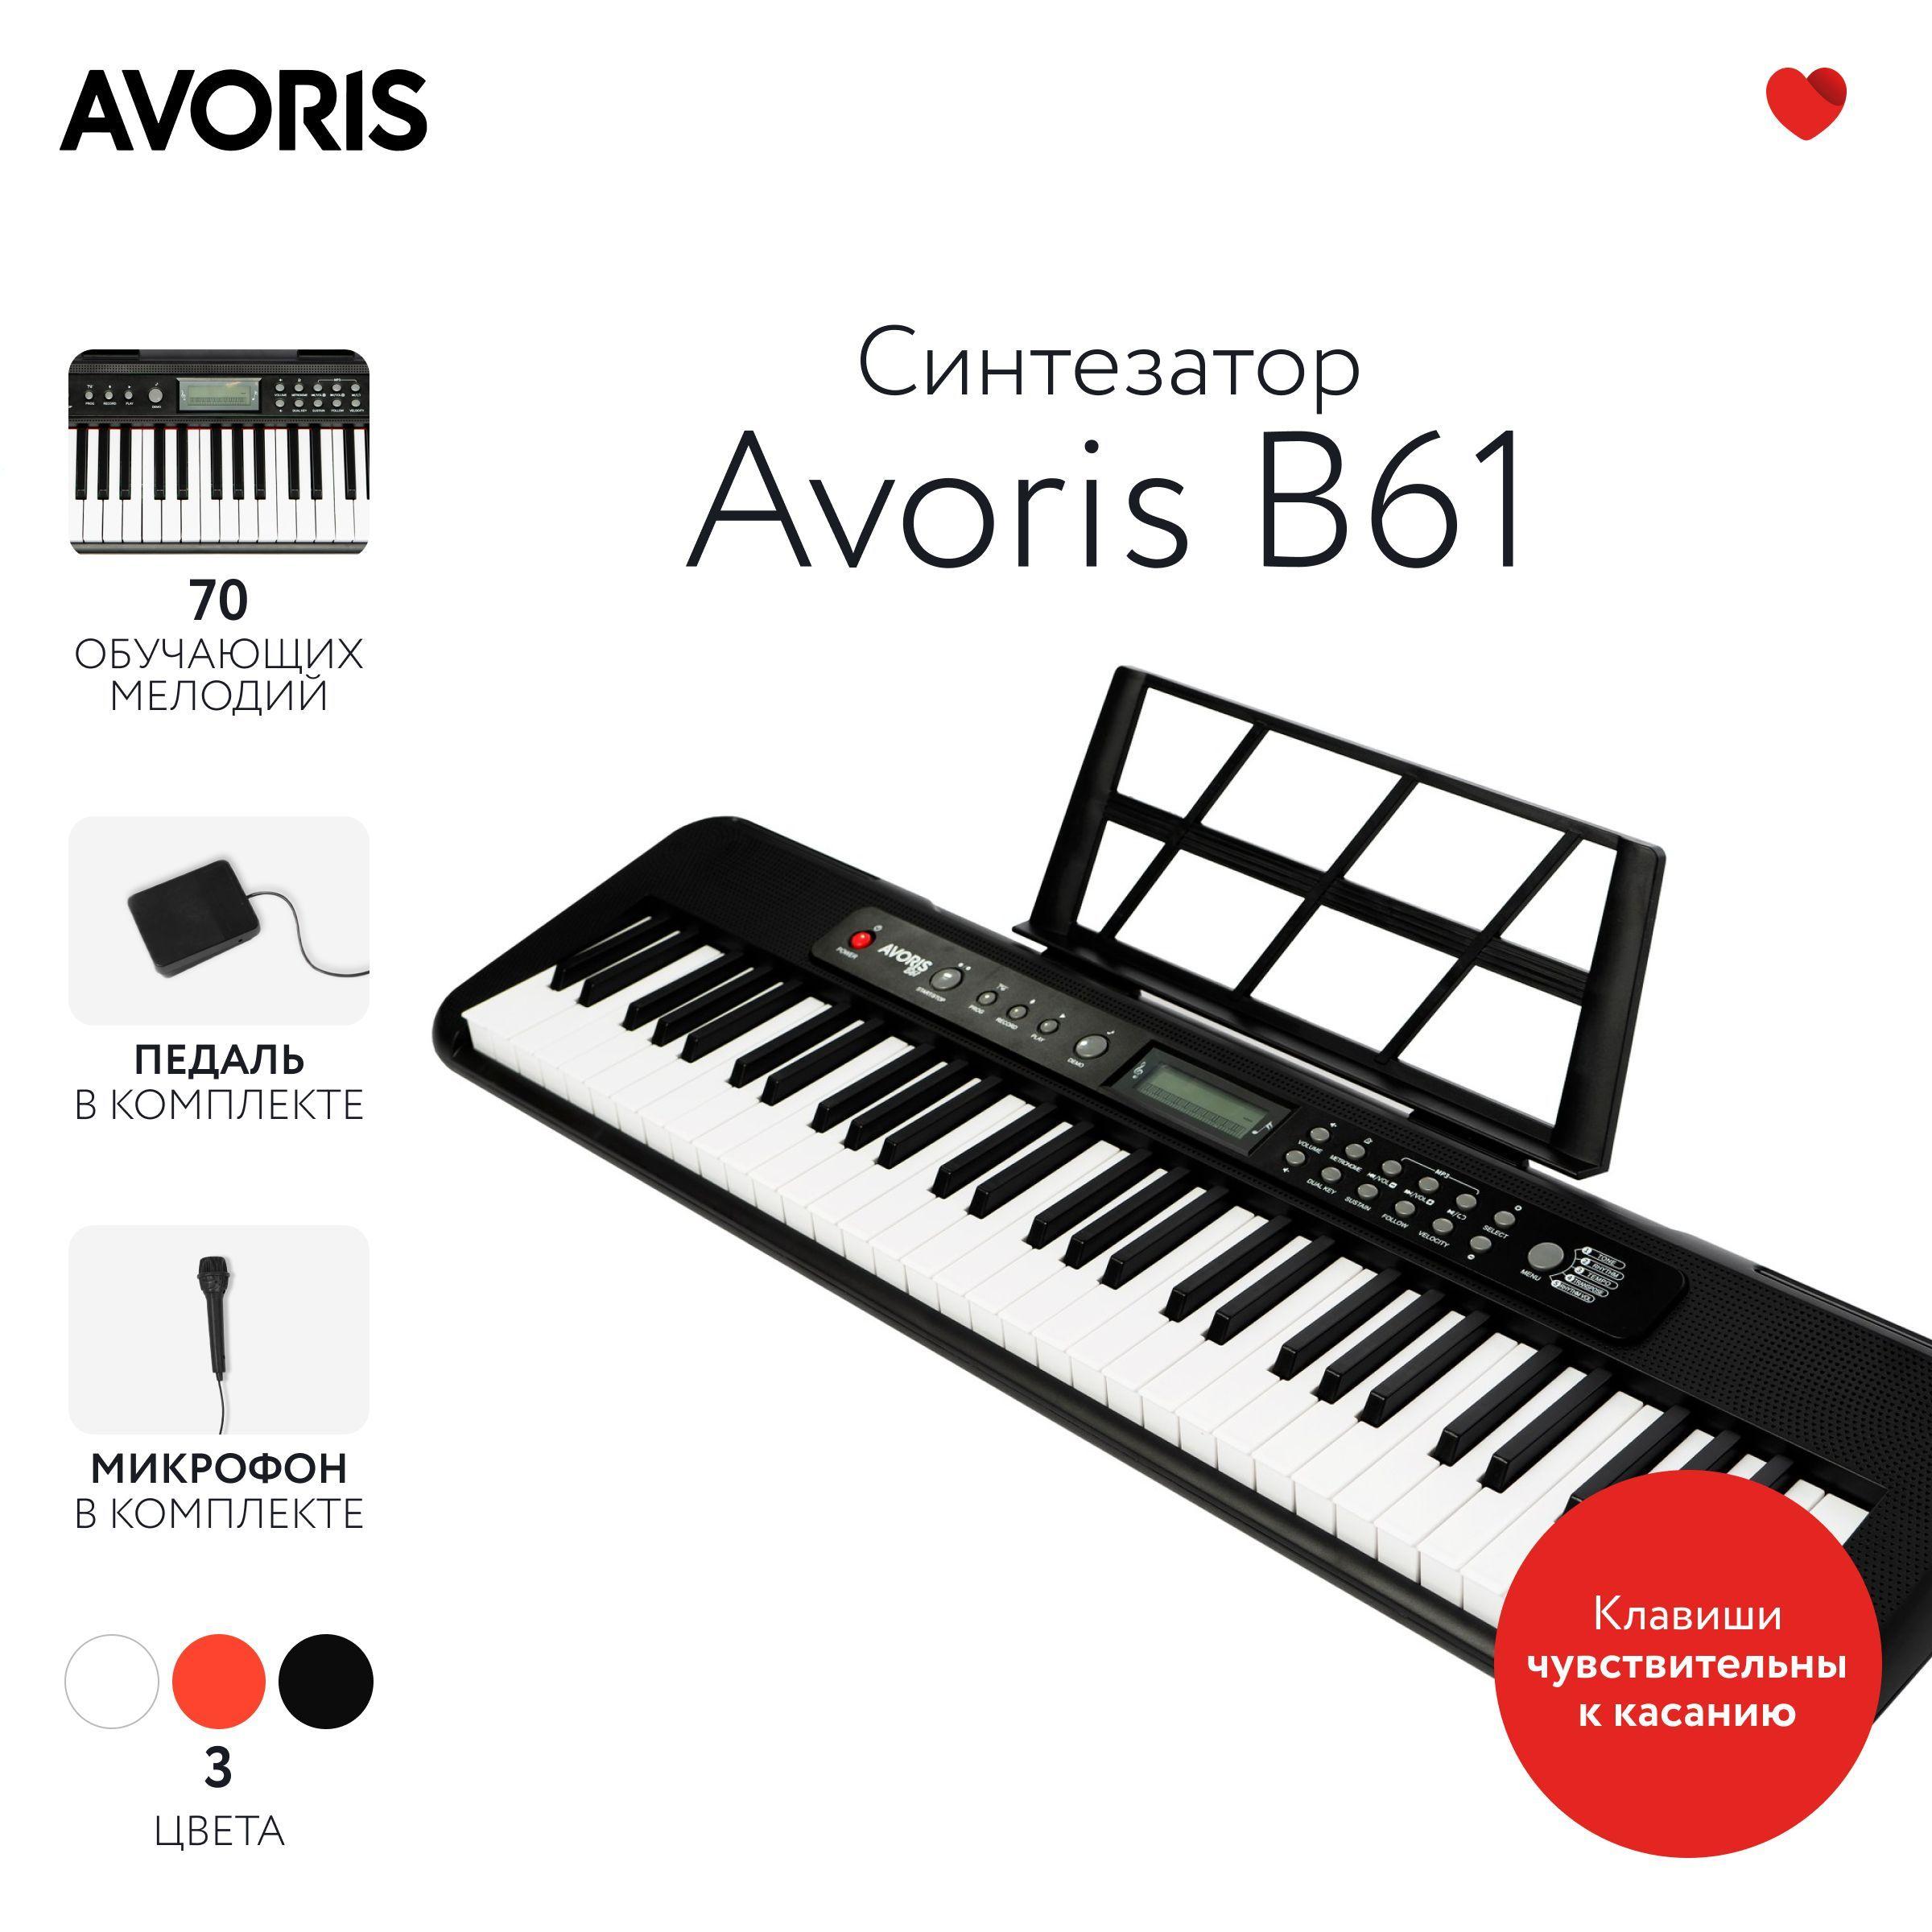 Avoris B61 - синтезатор с функцией обучения, чувствительный к касанию, чёрный цвет